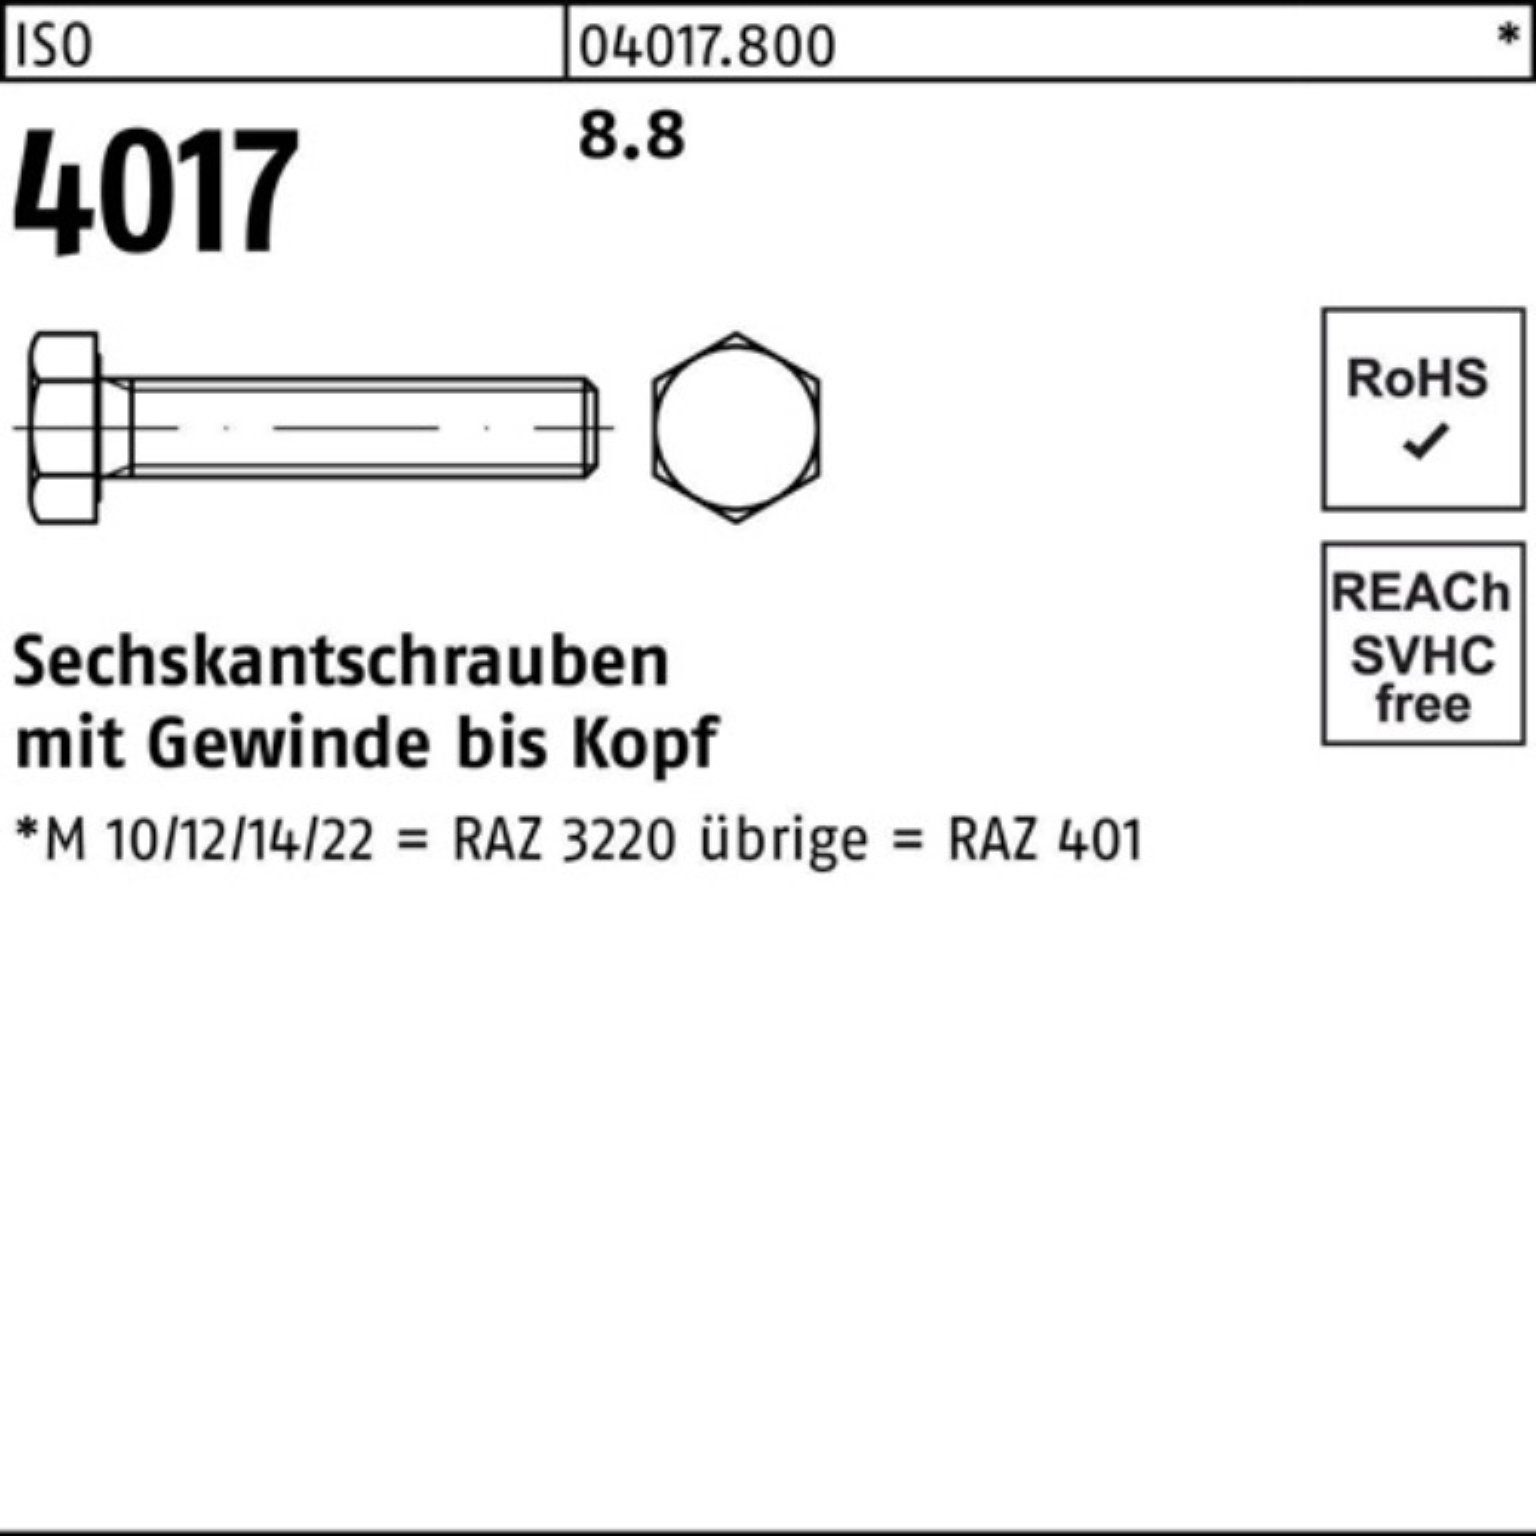 Stück 100er VG 50 ISO Bufab ISO Sechskantschraube 8.8 401 Sechskantschraube 45 M18x 4017 Pack